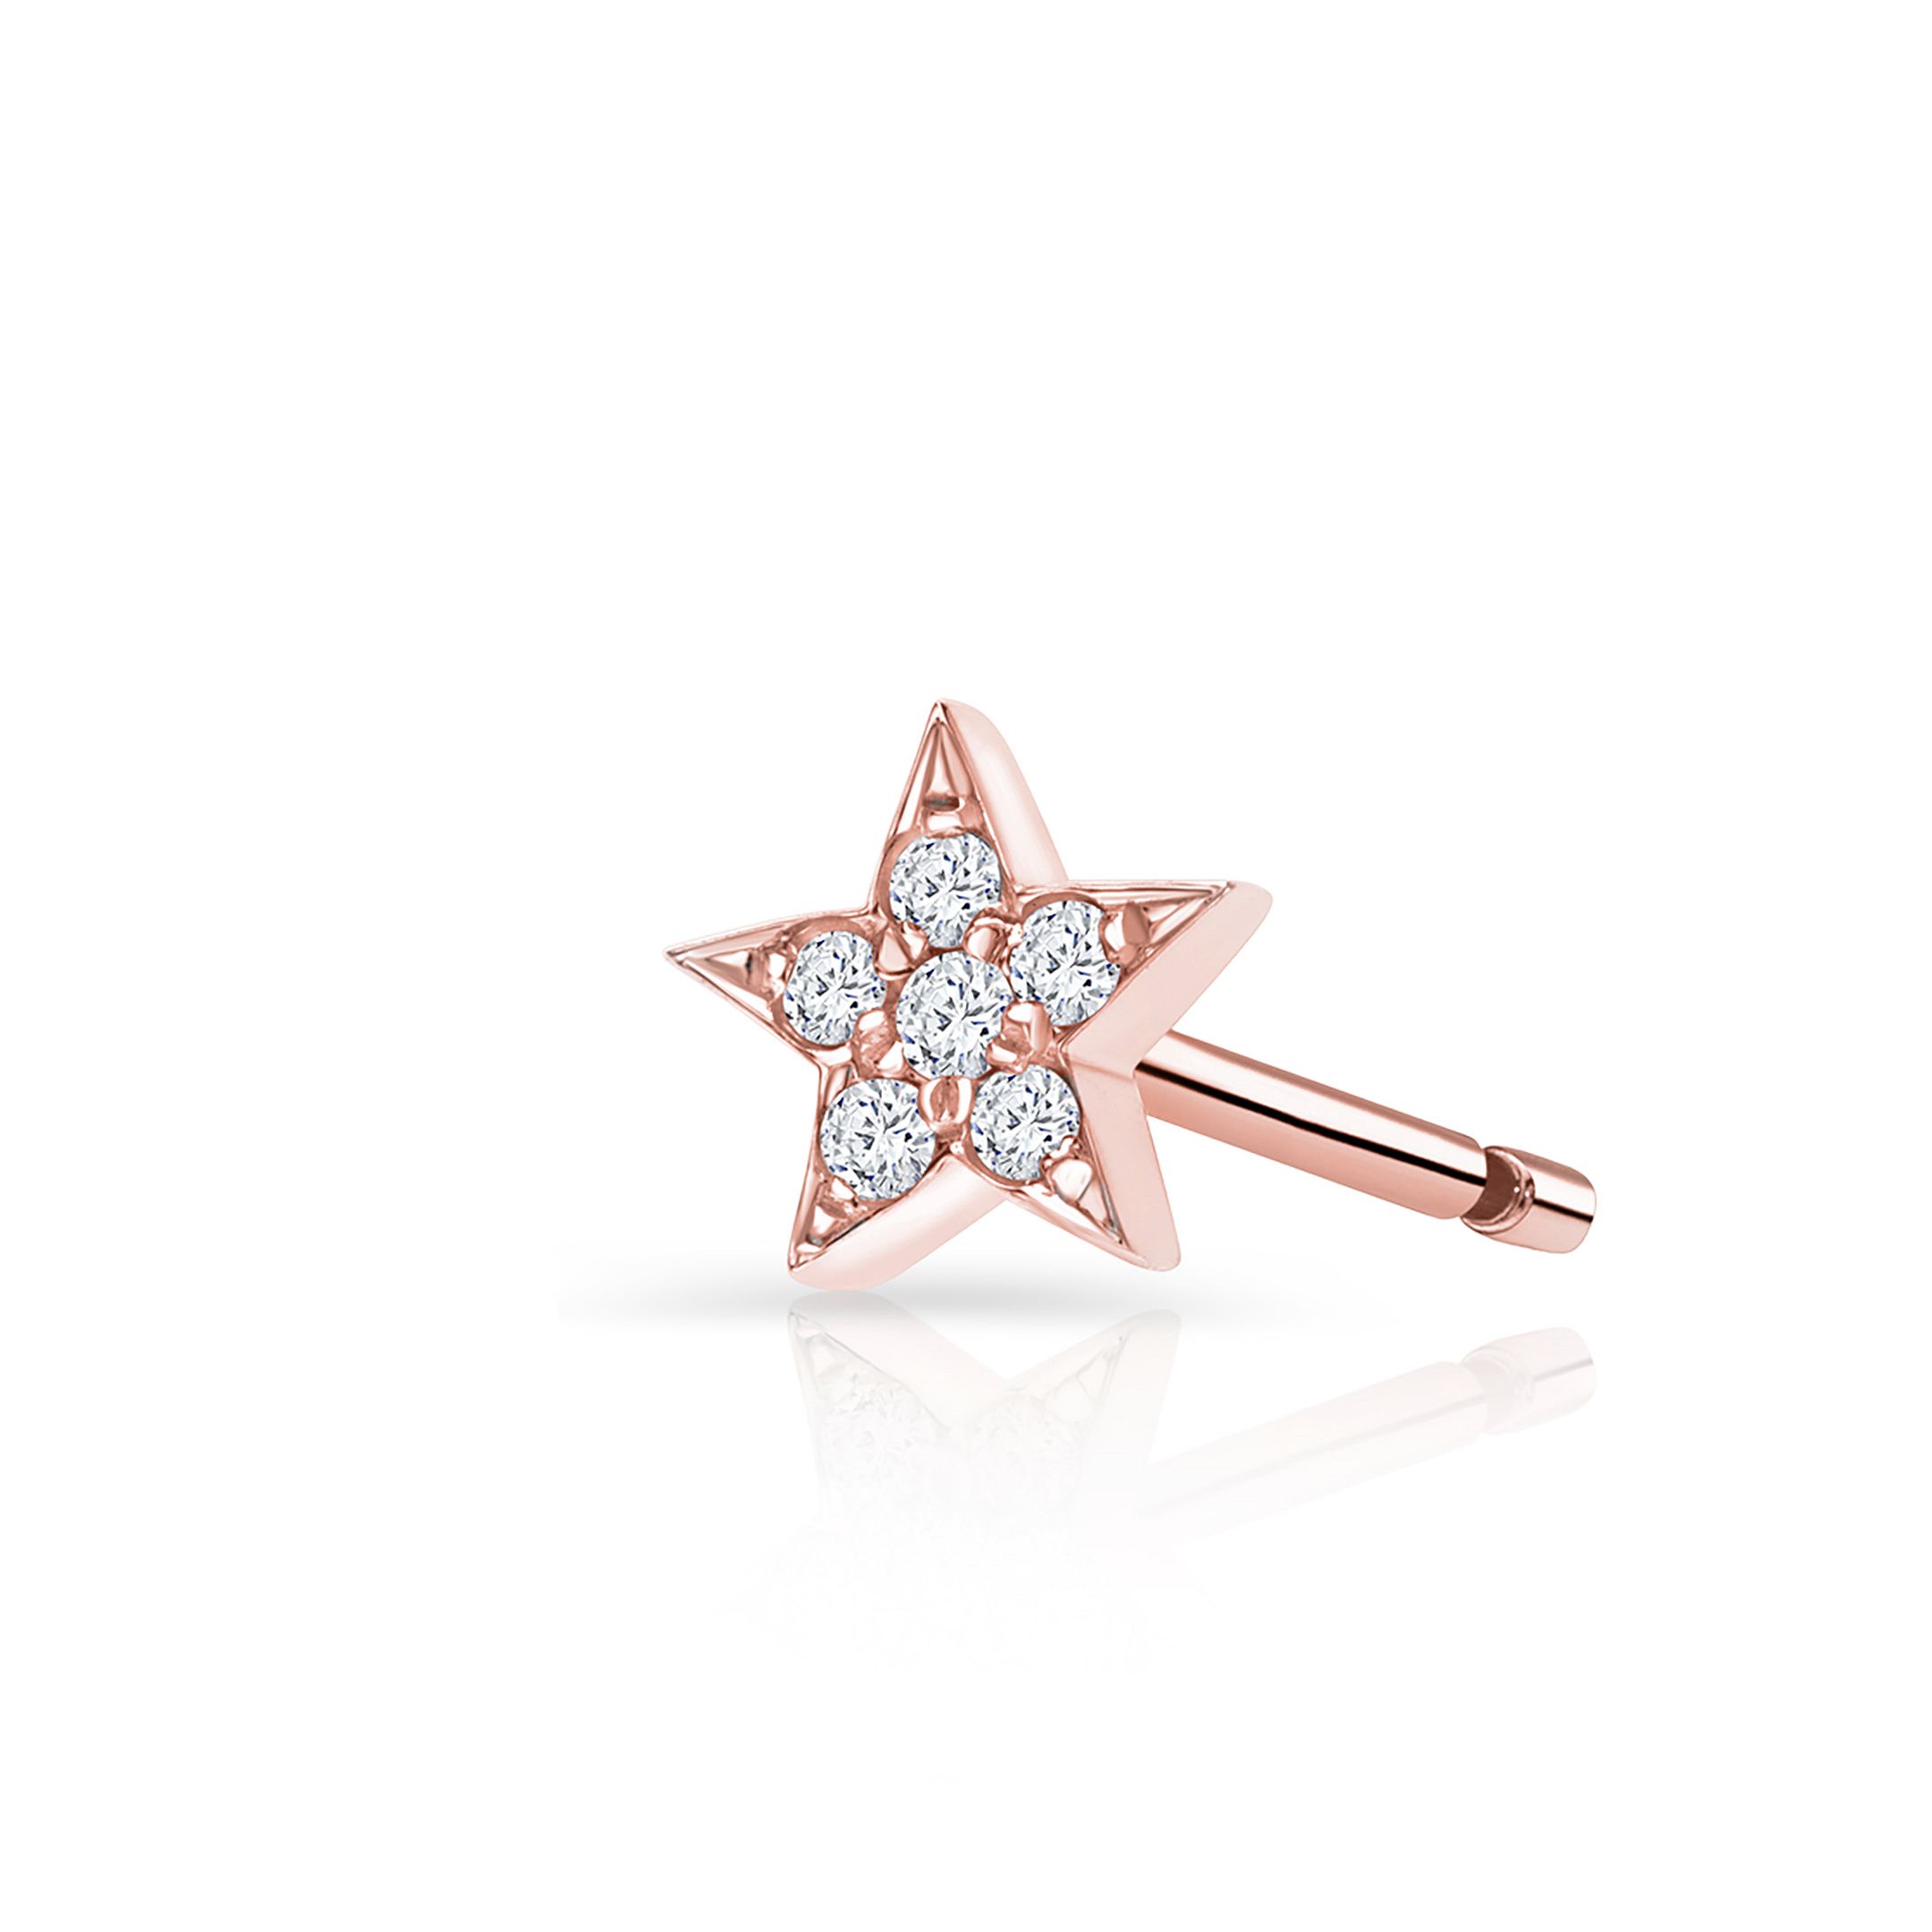 Pendiente Piercing Estrella Moon Diamonds en Oro Rosa de 18 Kt